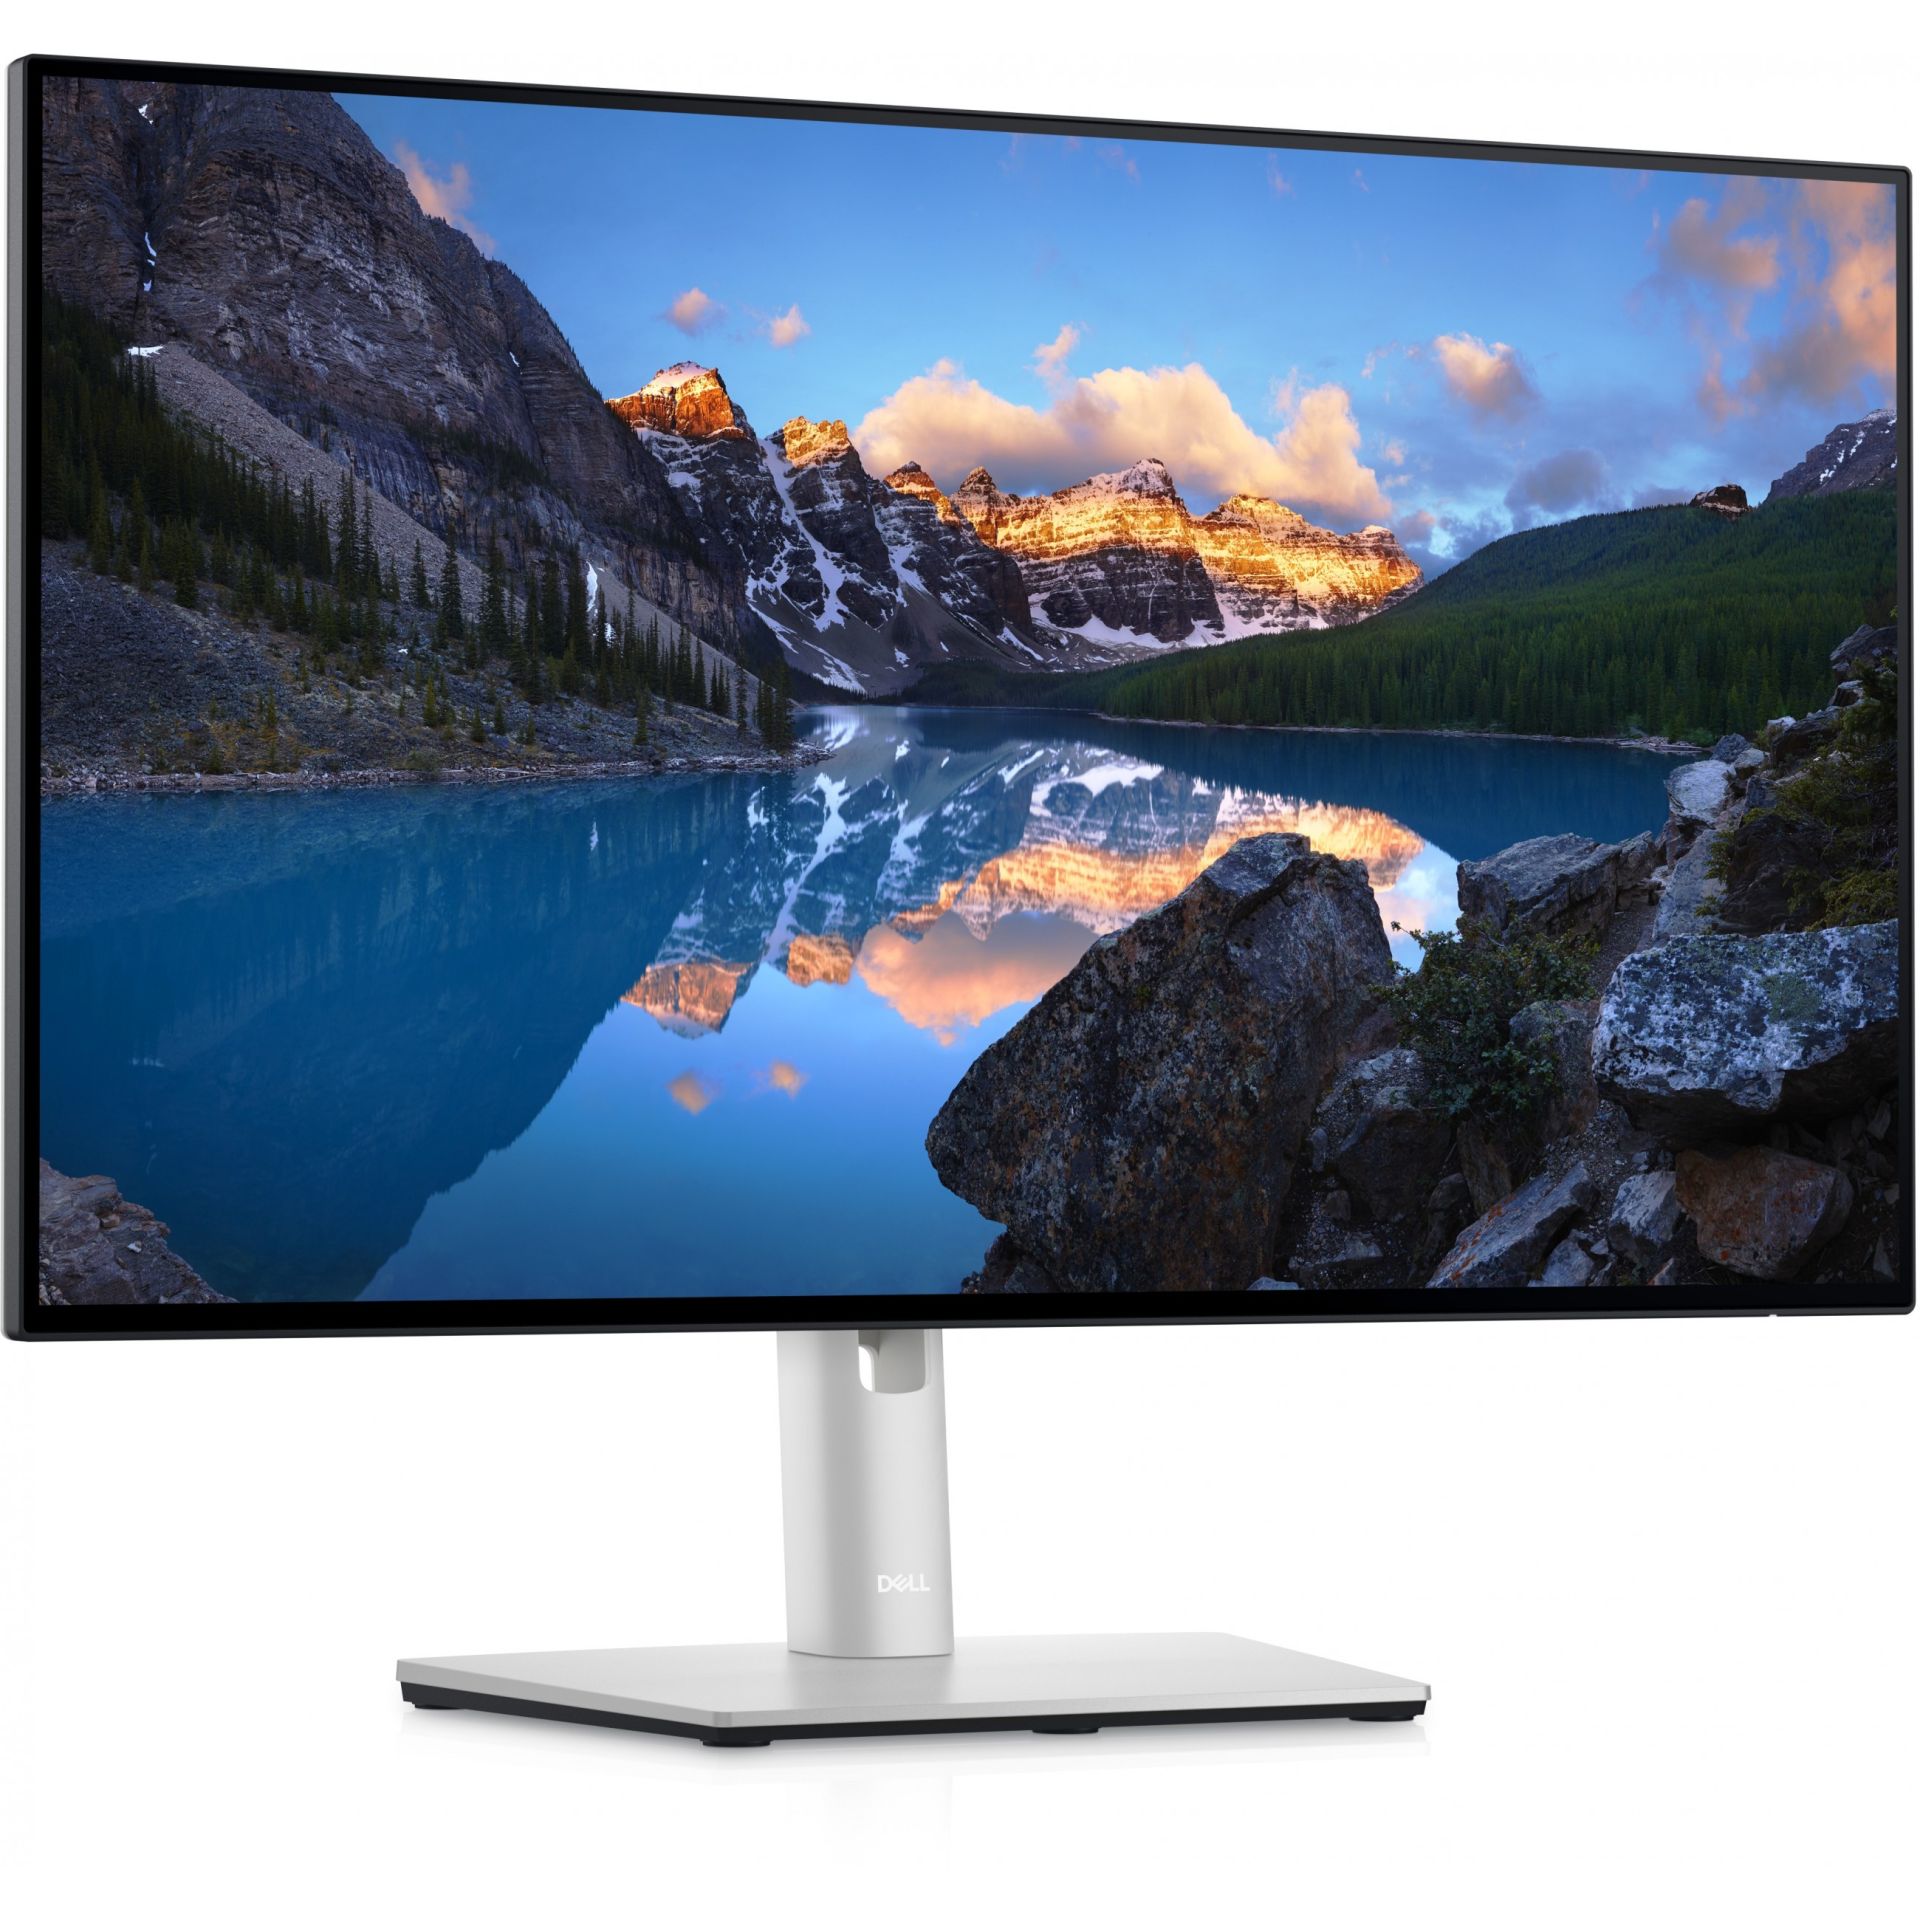 DELL UltraSharp 24 Monitor – U2422H, 60,5 cm (23.8 Zoll), 1920 x 1080 Pixel, Full HD, LCD, 8 ms, Silber